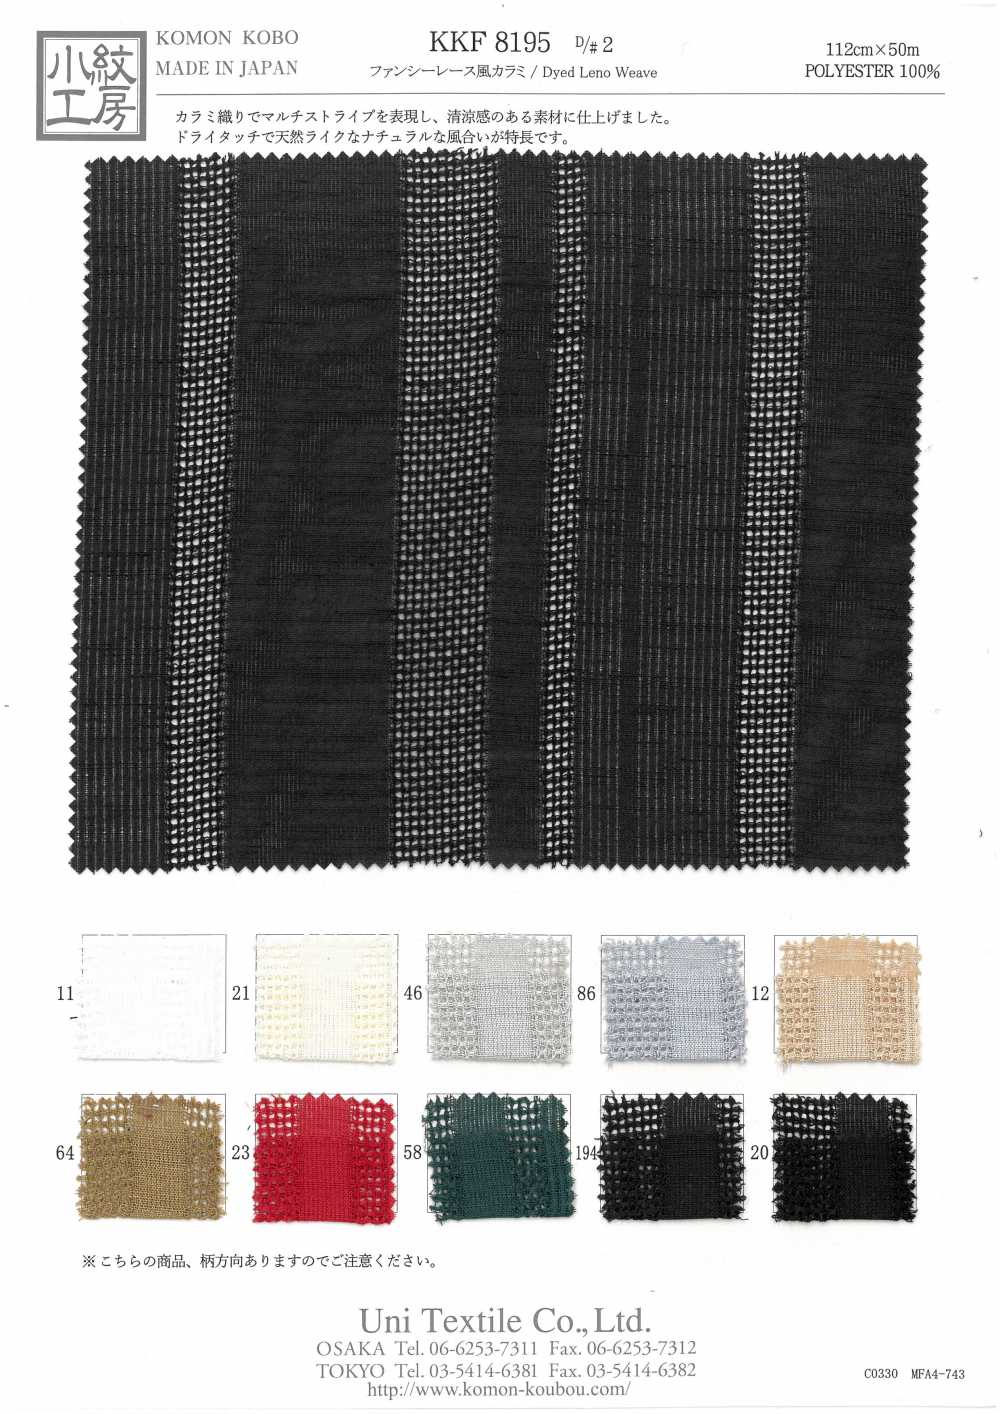 KKF8195-D/2 Tessuto Leno In Stile Pizzo Fantasia[Tessile / Tessuto] Uni Textile